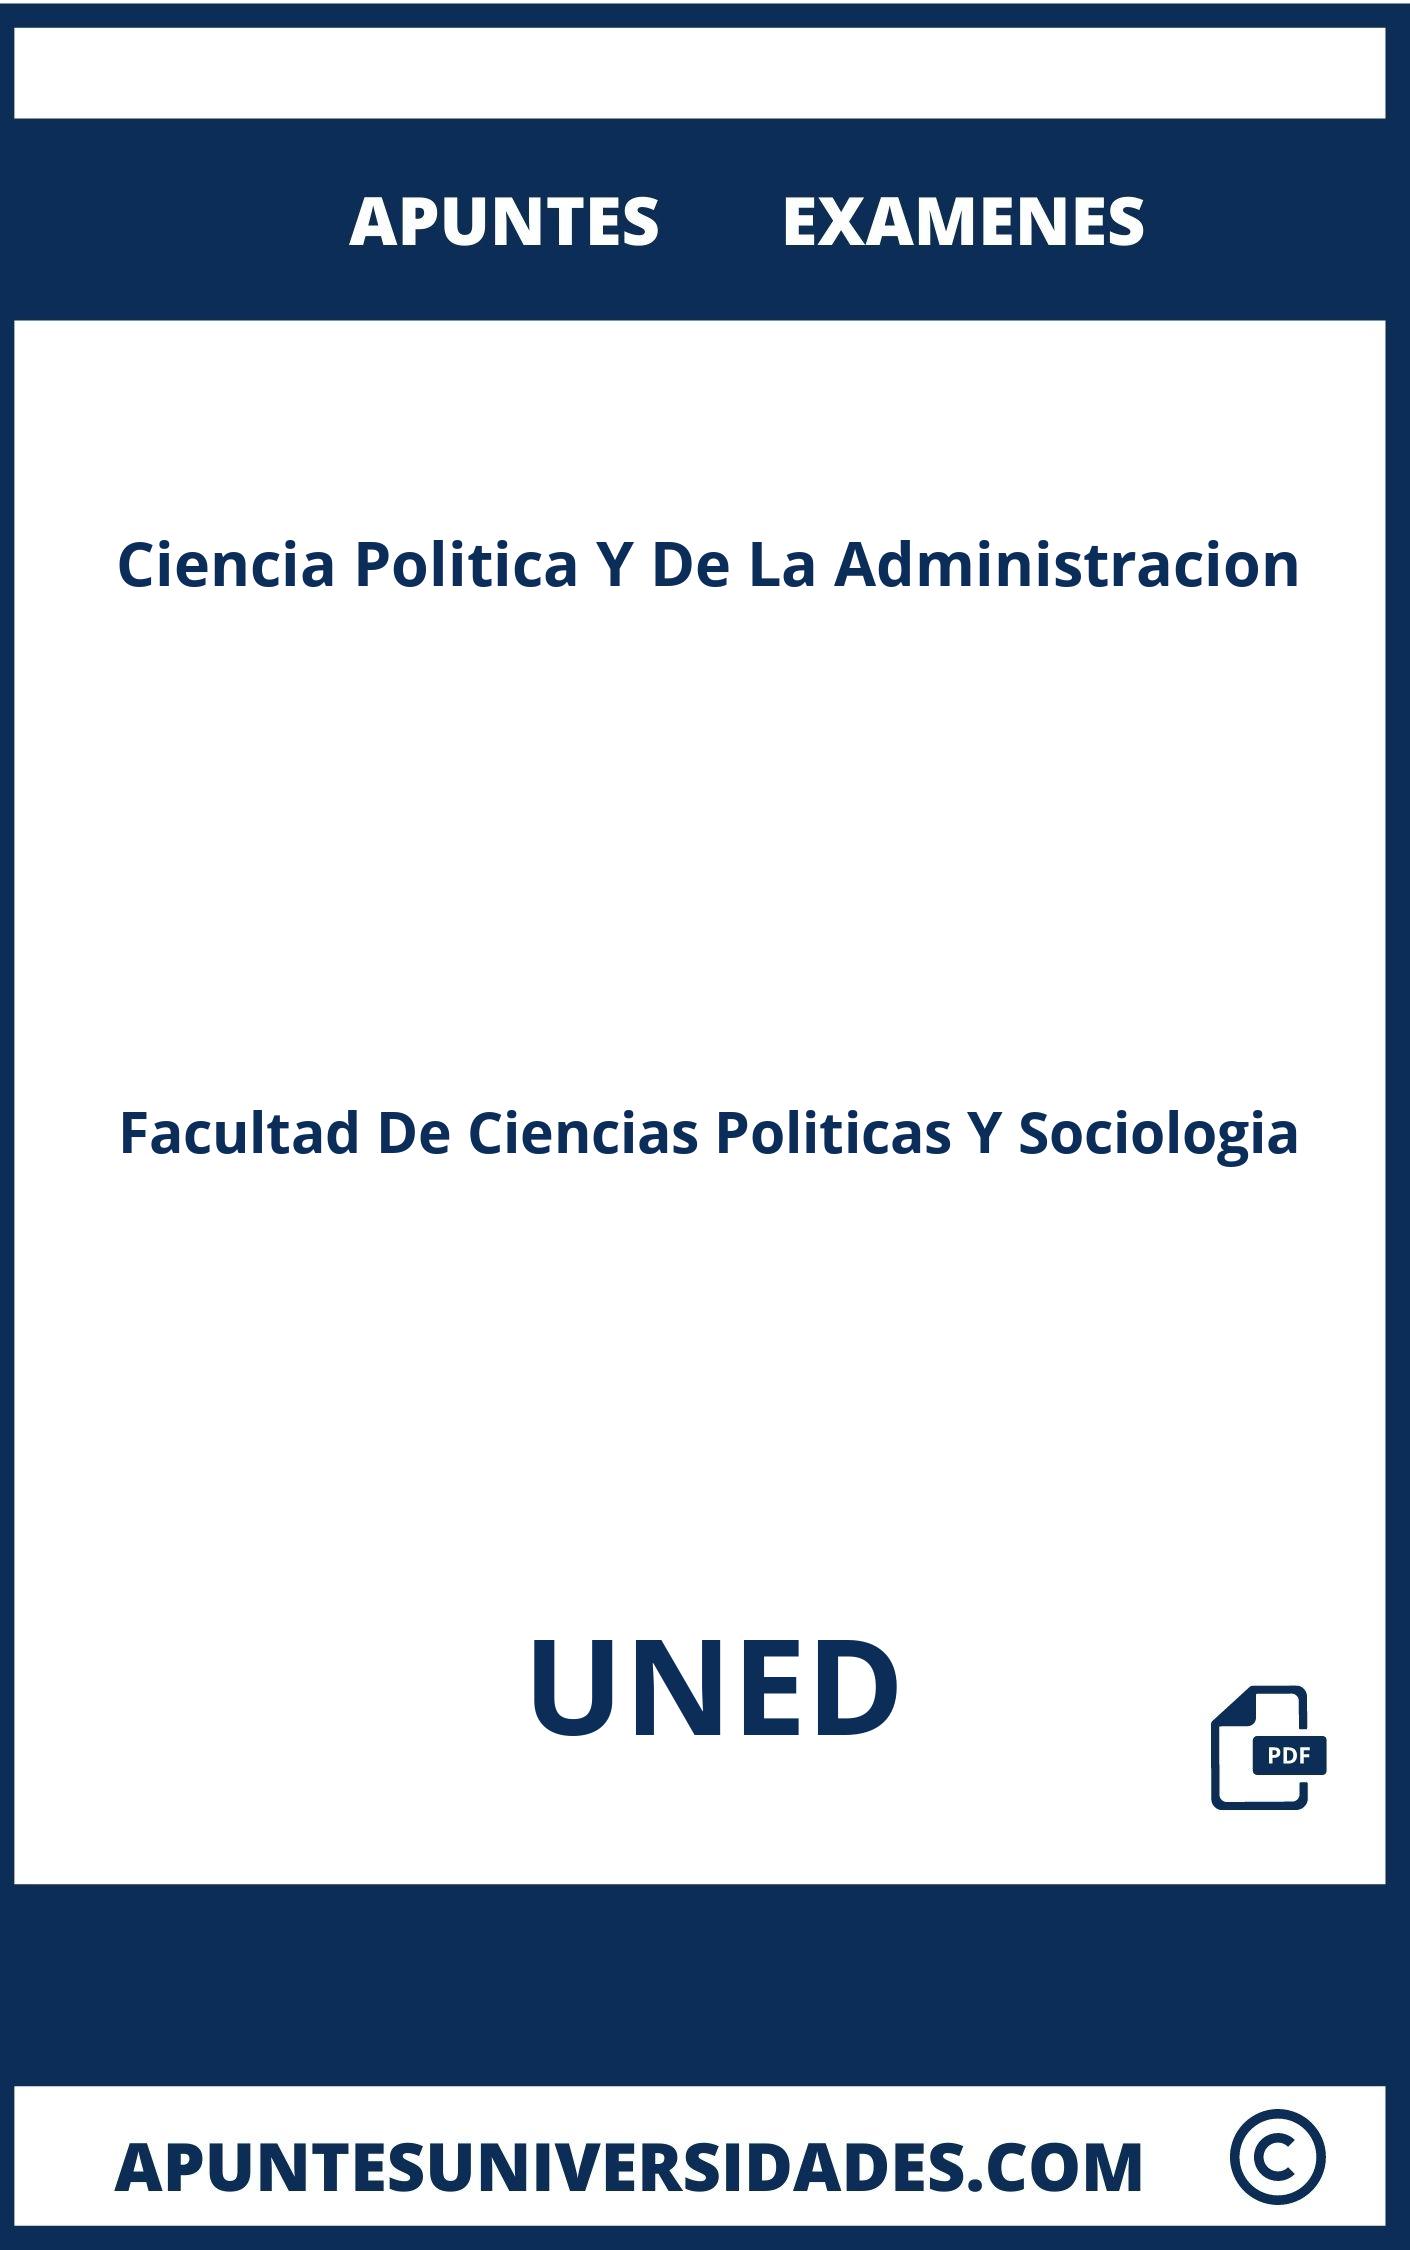 Examenes y Apuntes de Ciencia Politica Y De La Administracion UNED